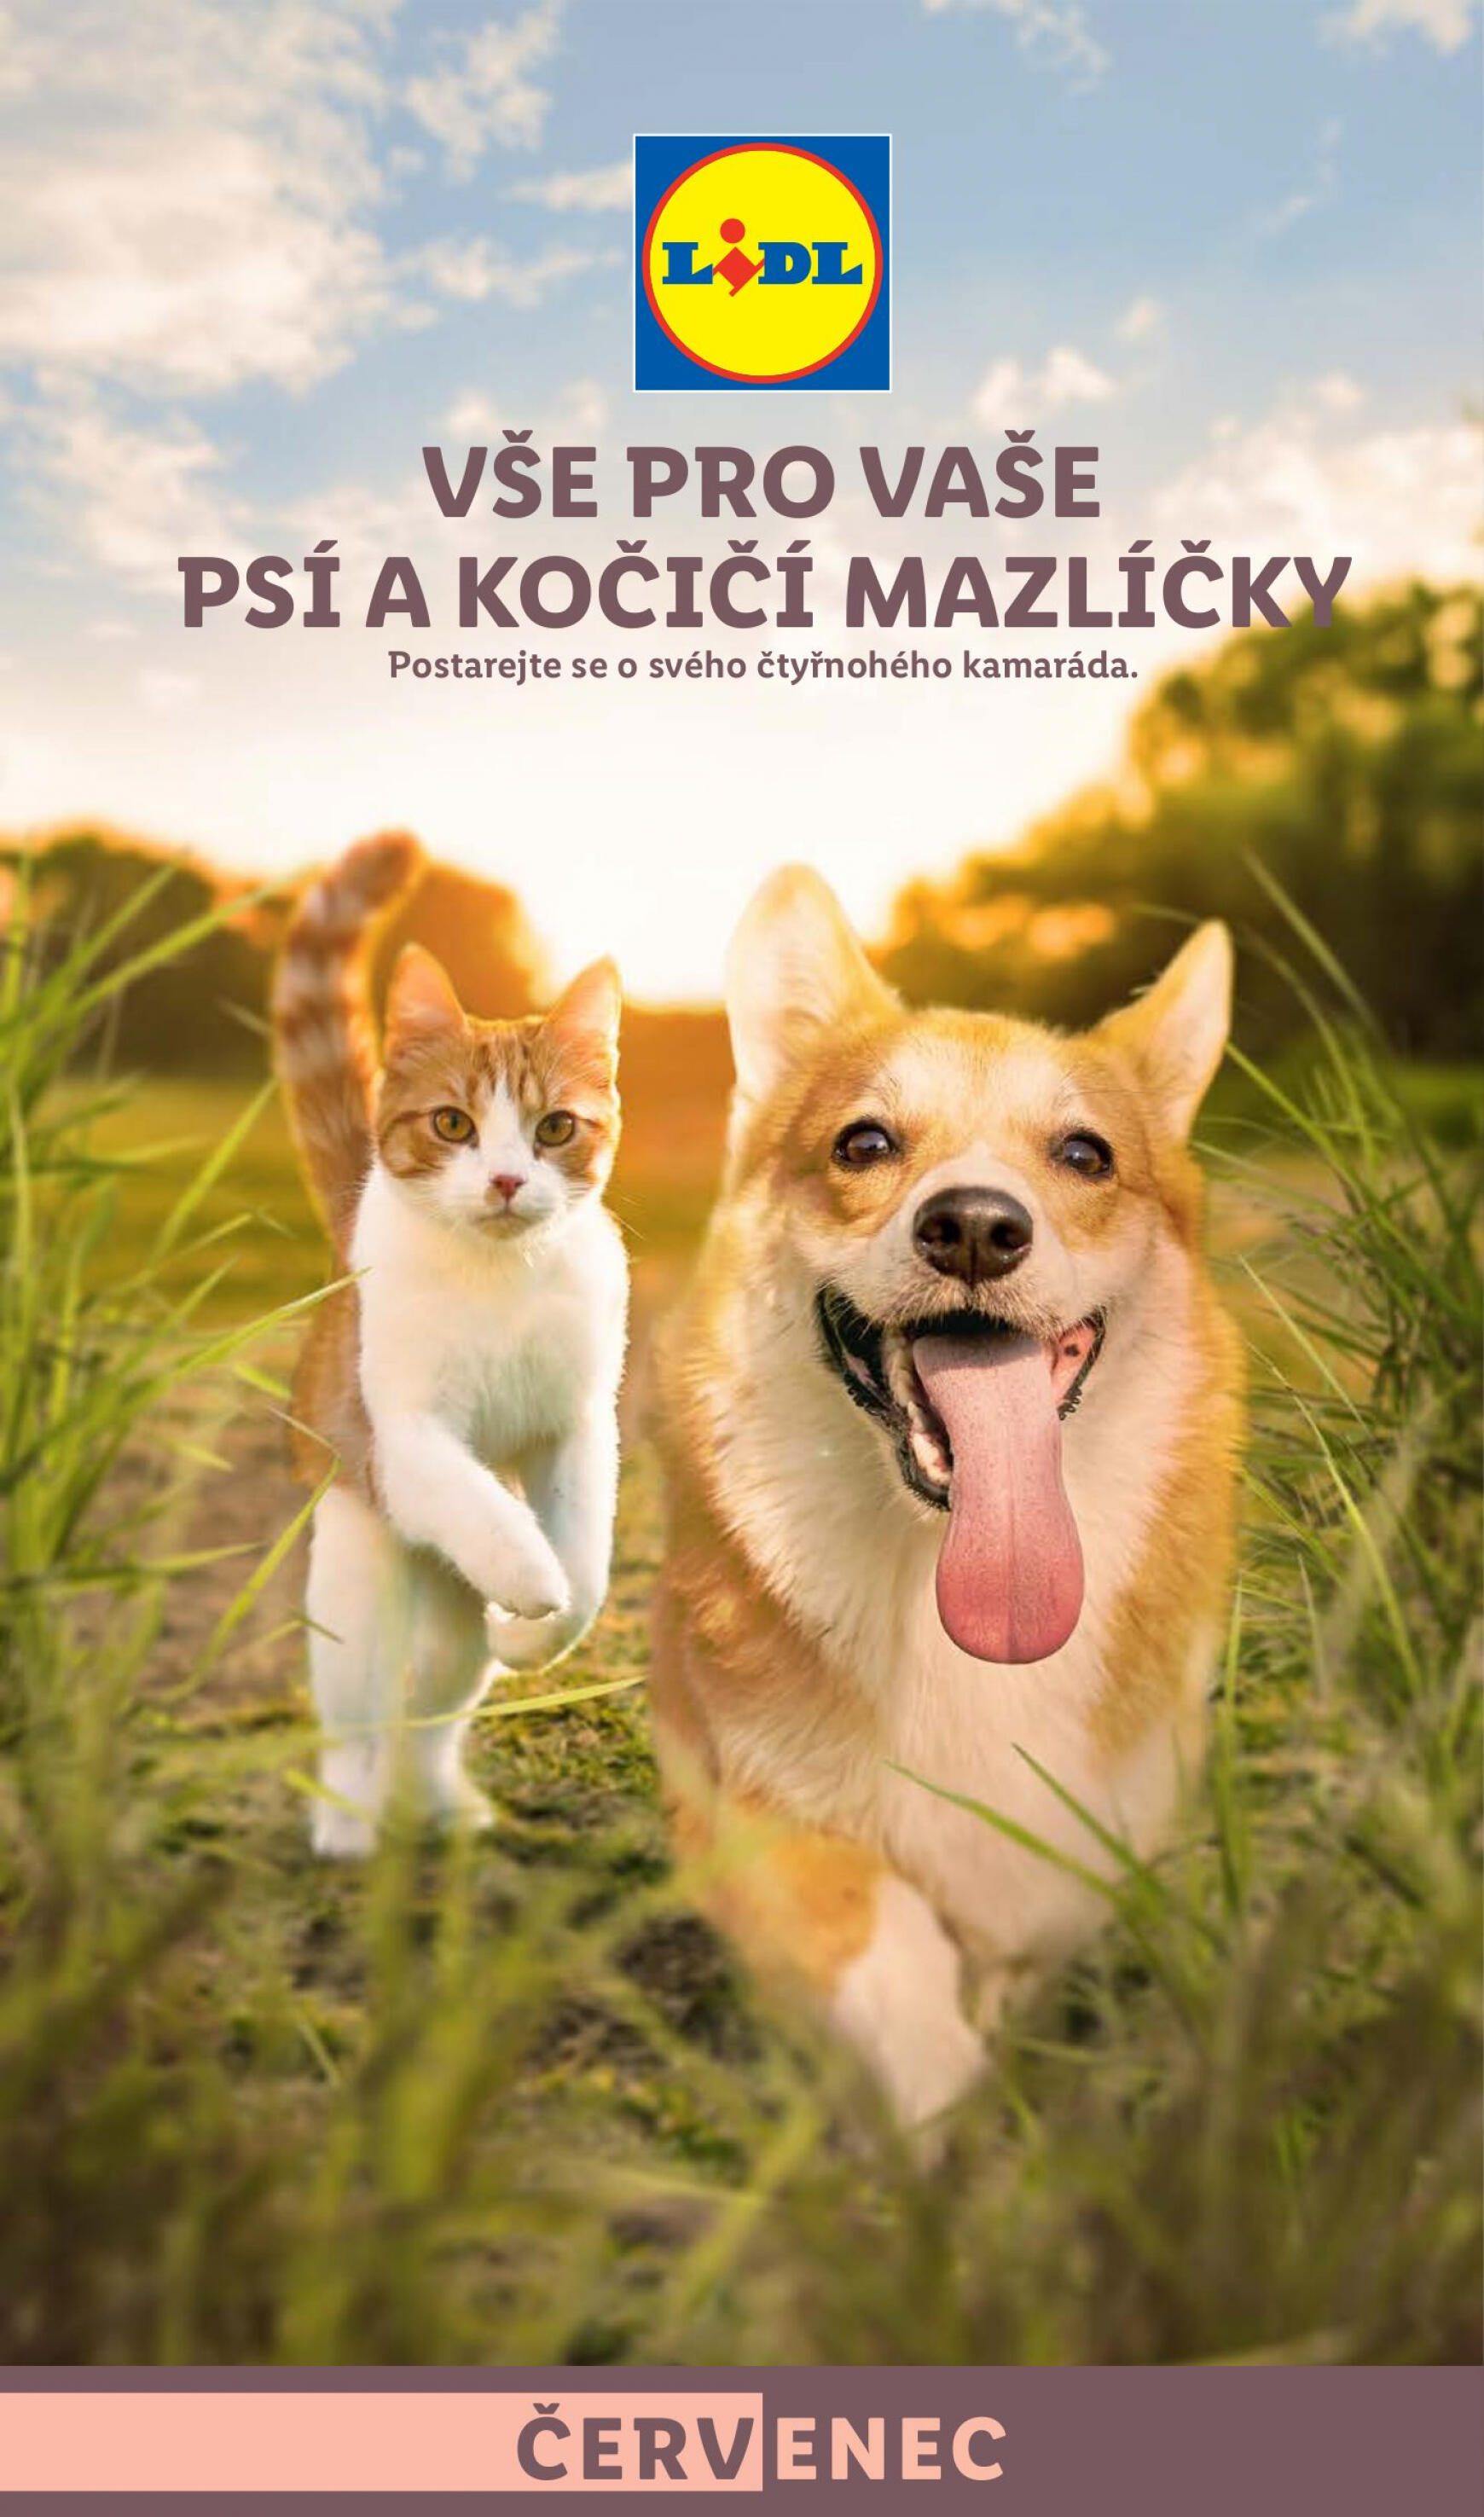 lidl - Leták Lidl - Vše pro vaše psí a kočičí mazlíčky aktuální 01.07. - 31.07.